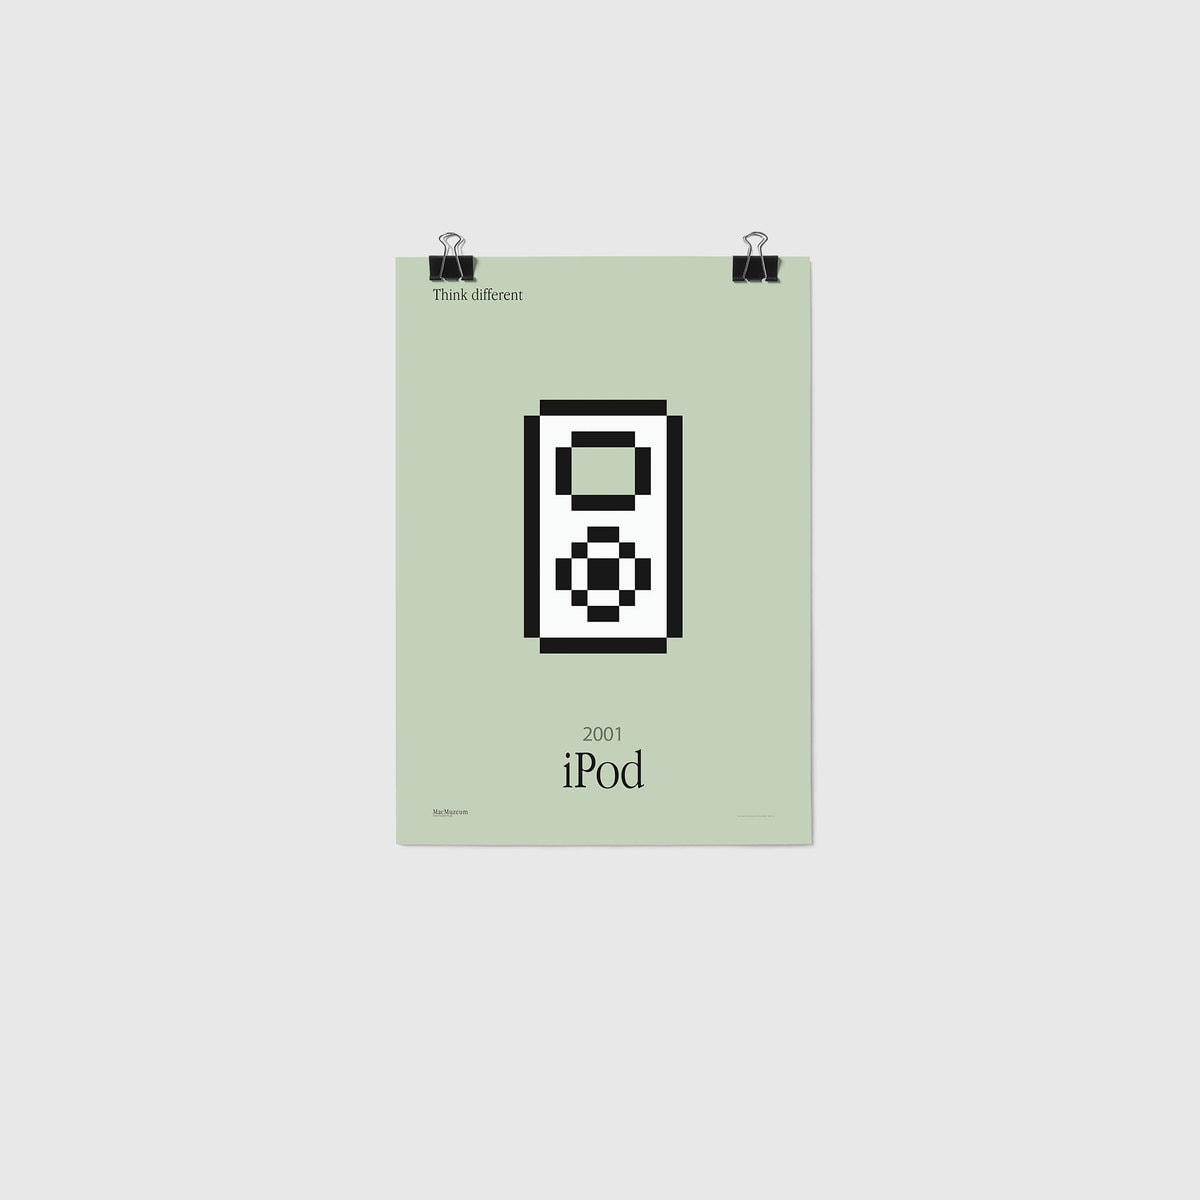 iPod – Iconic